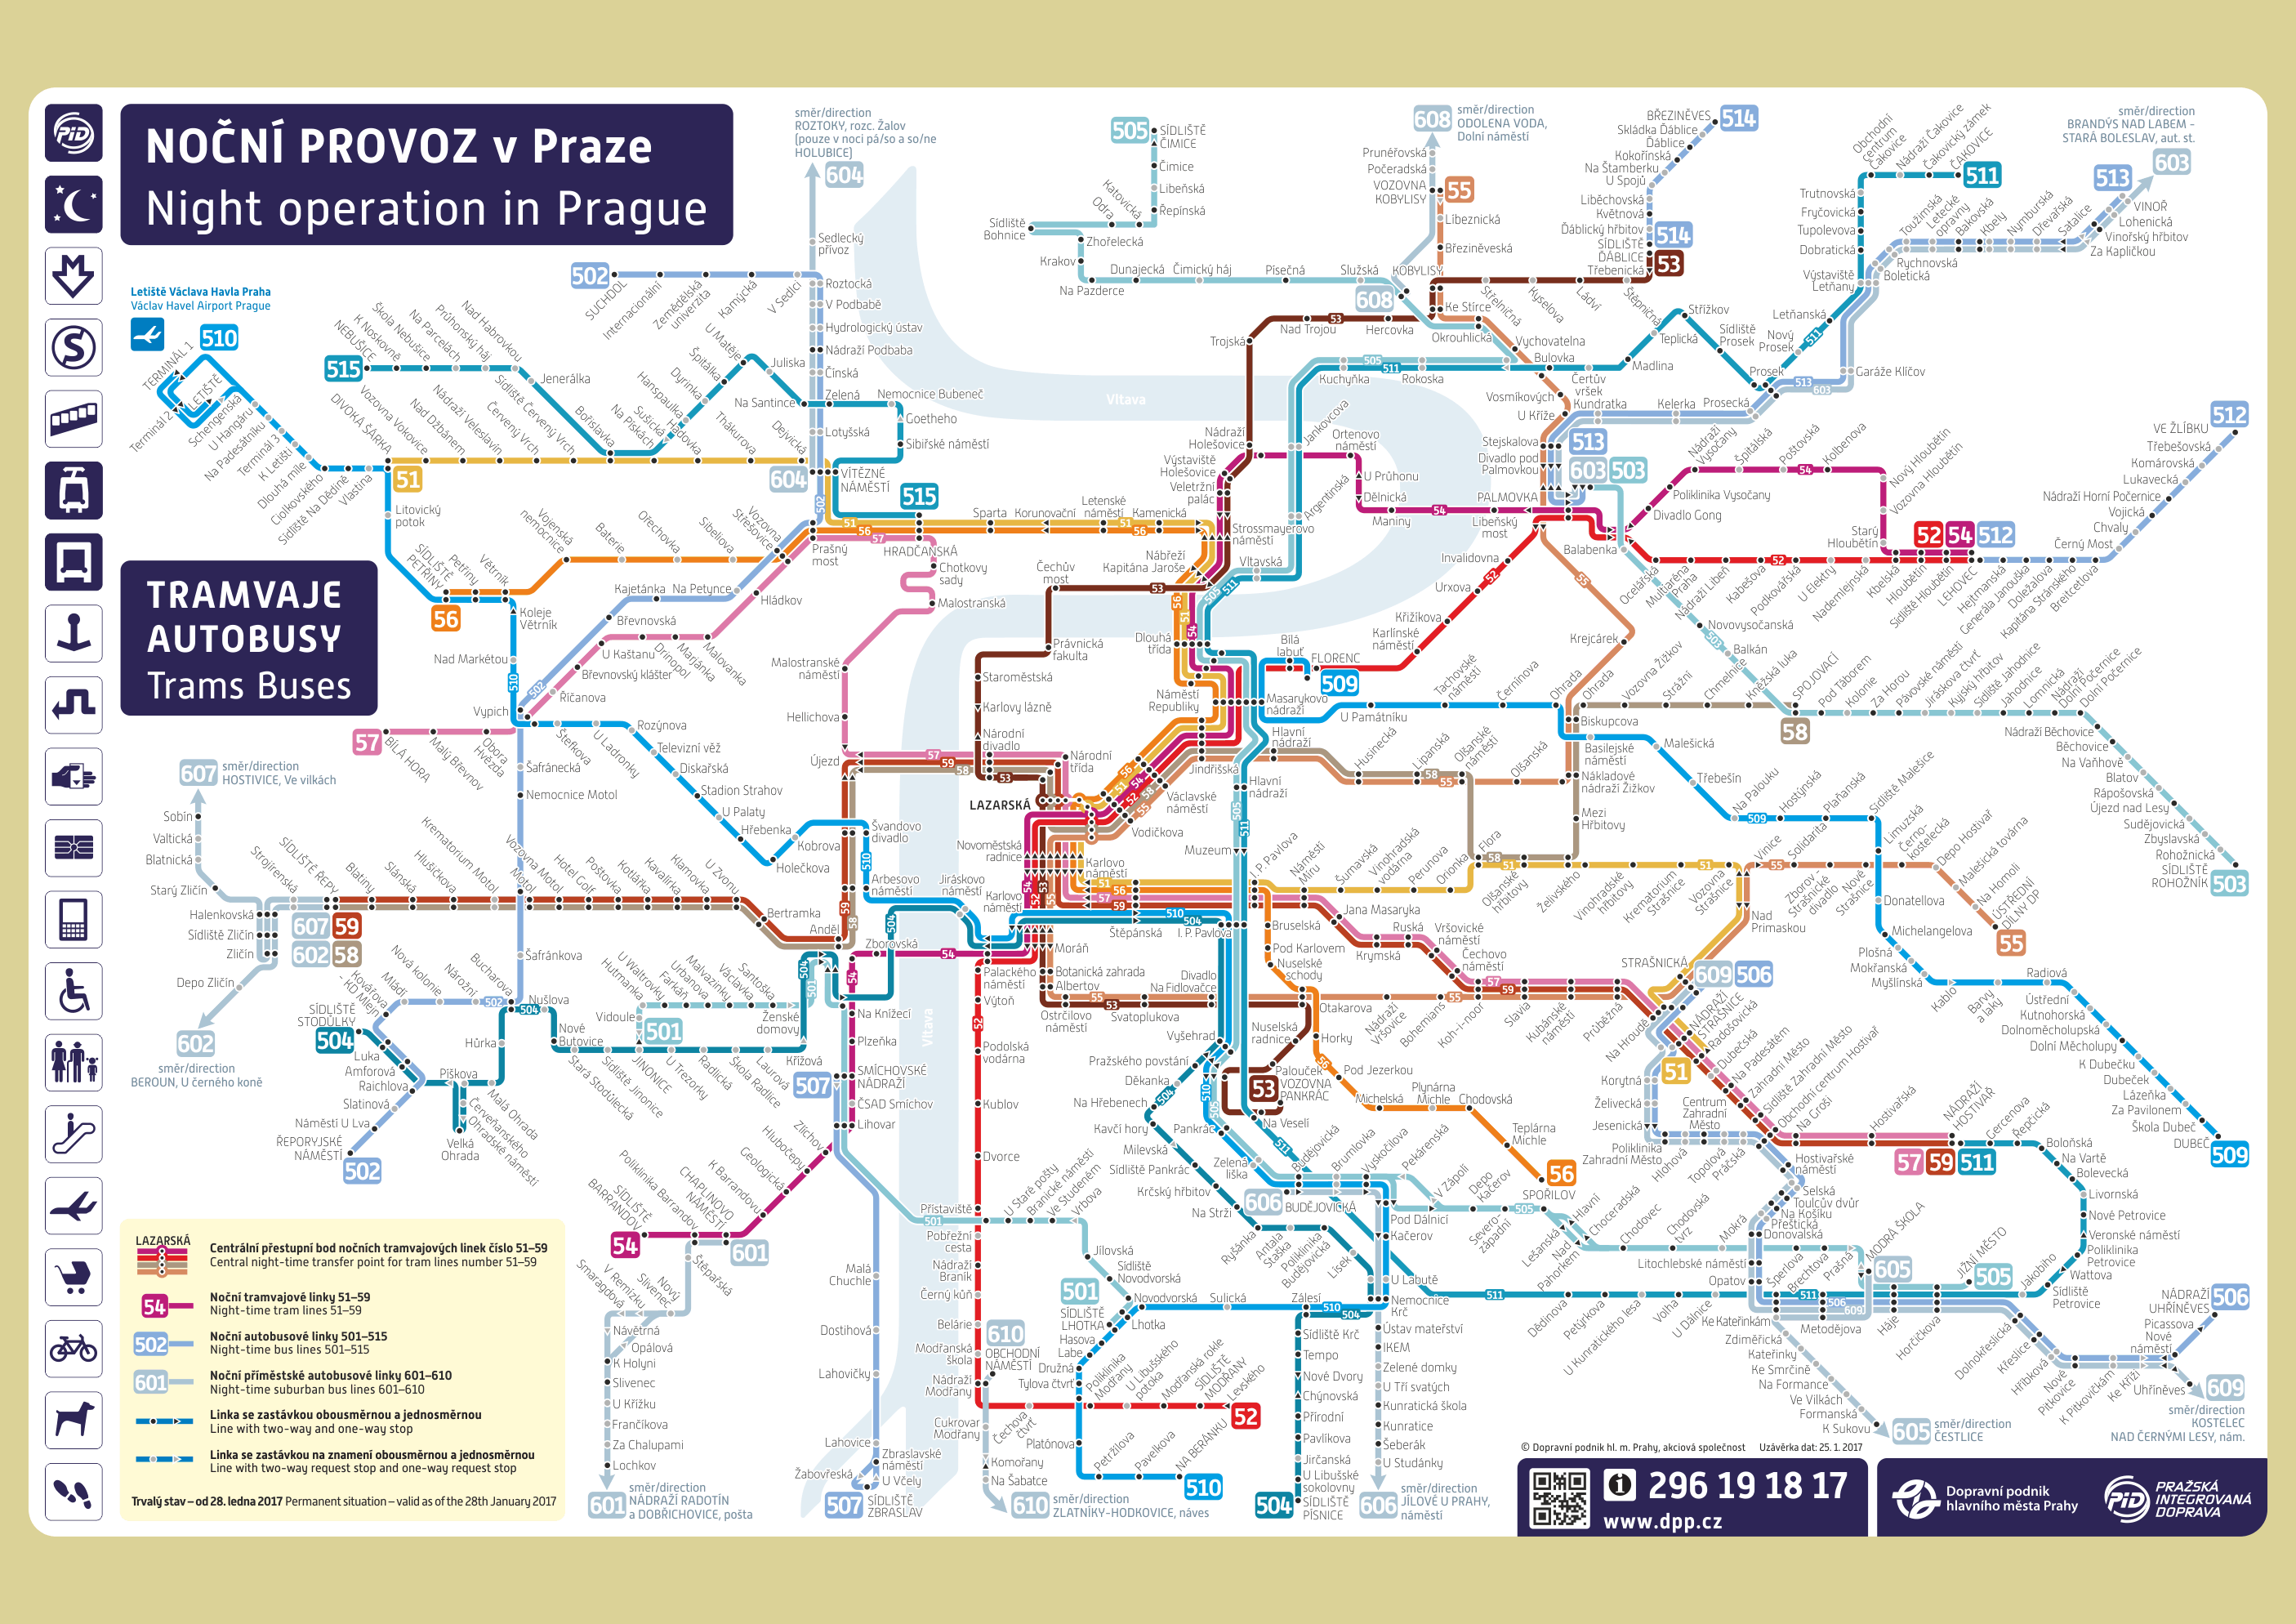 dpp.cz > Transit Schematics | Dopravní podnik hlavního města Prahy